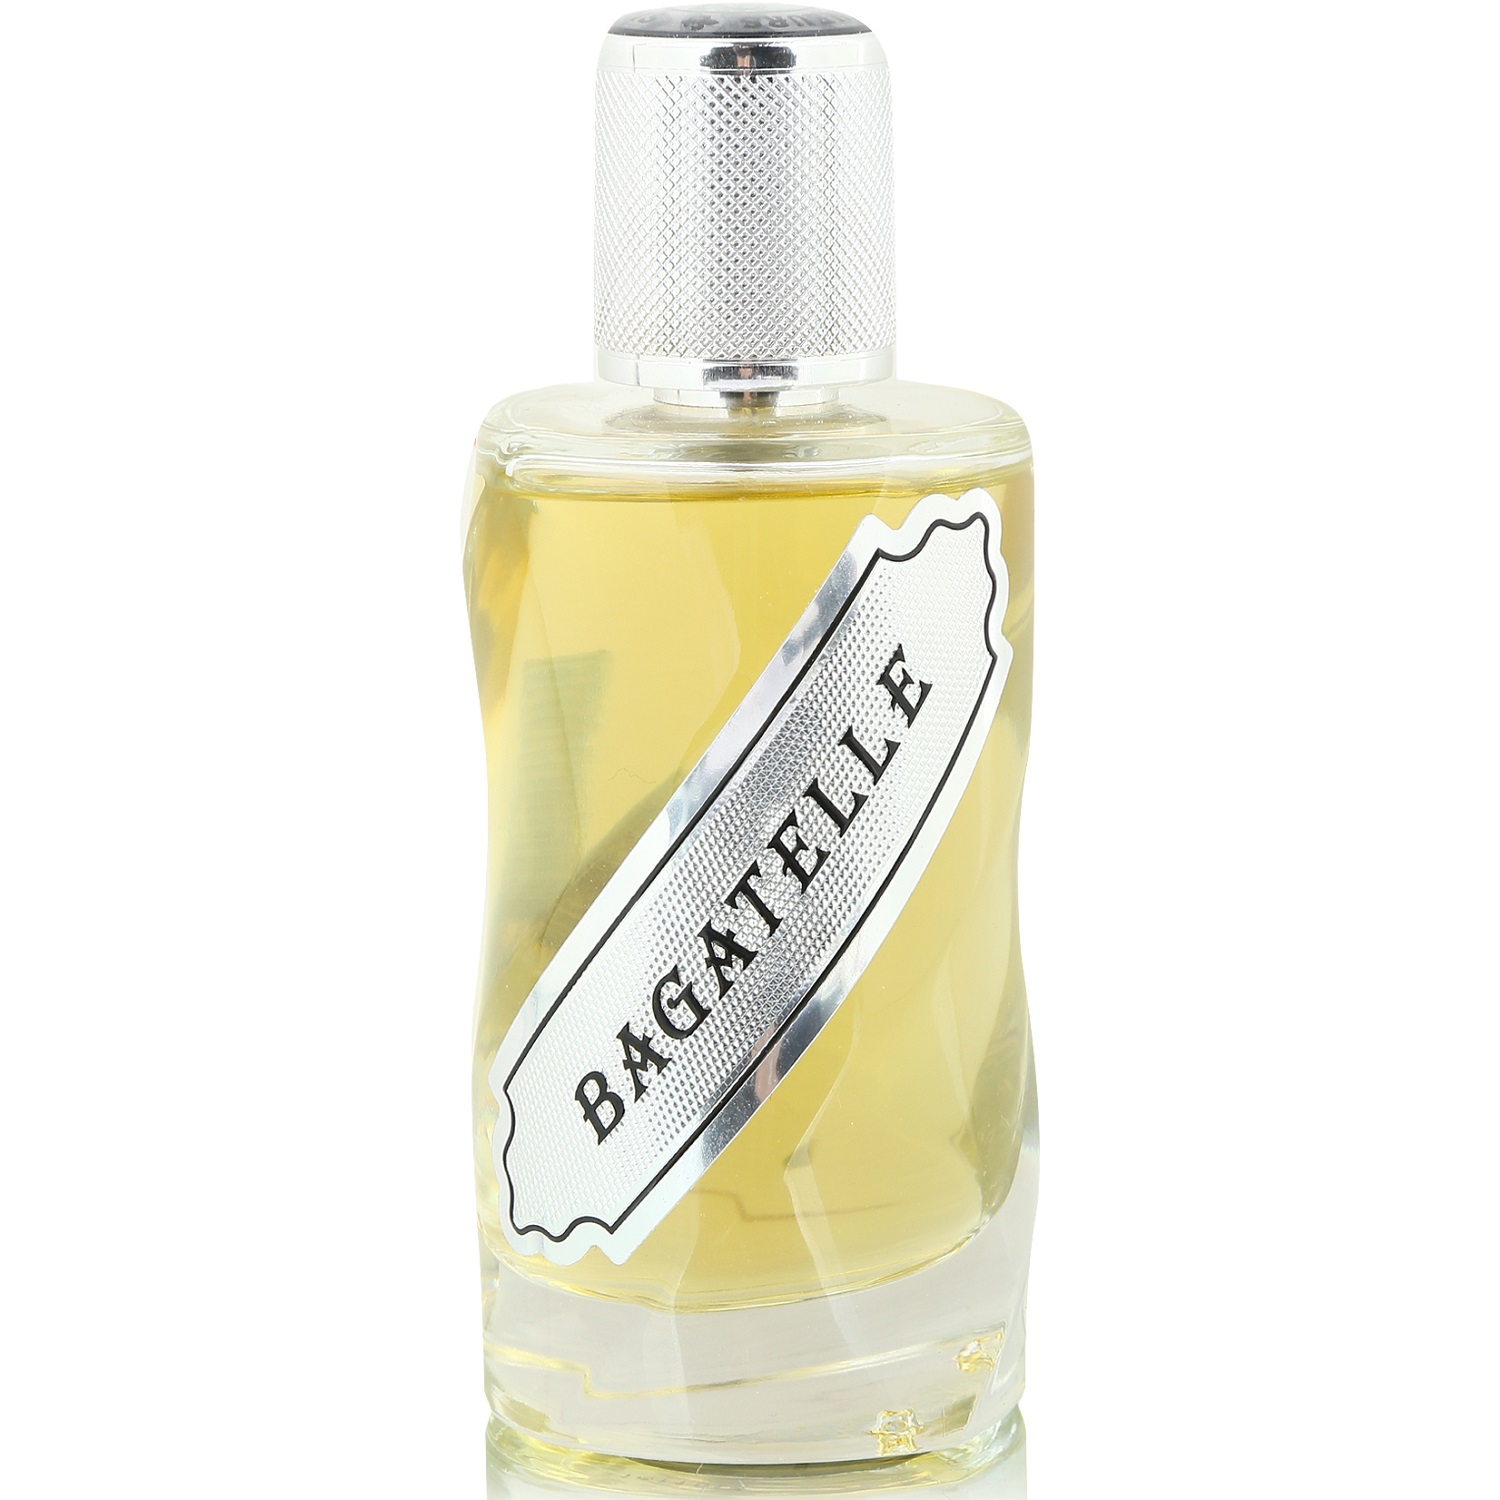 12 Parfumeurs Francais - Bagatelle (1мл)